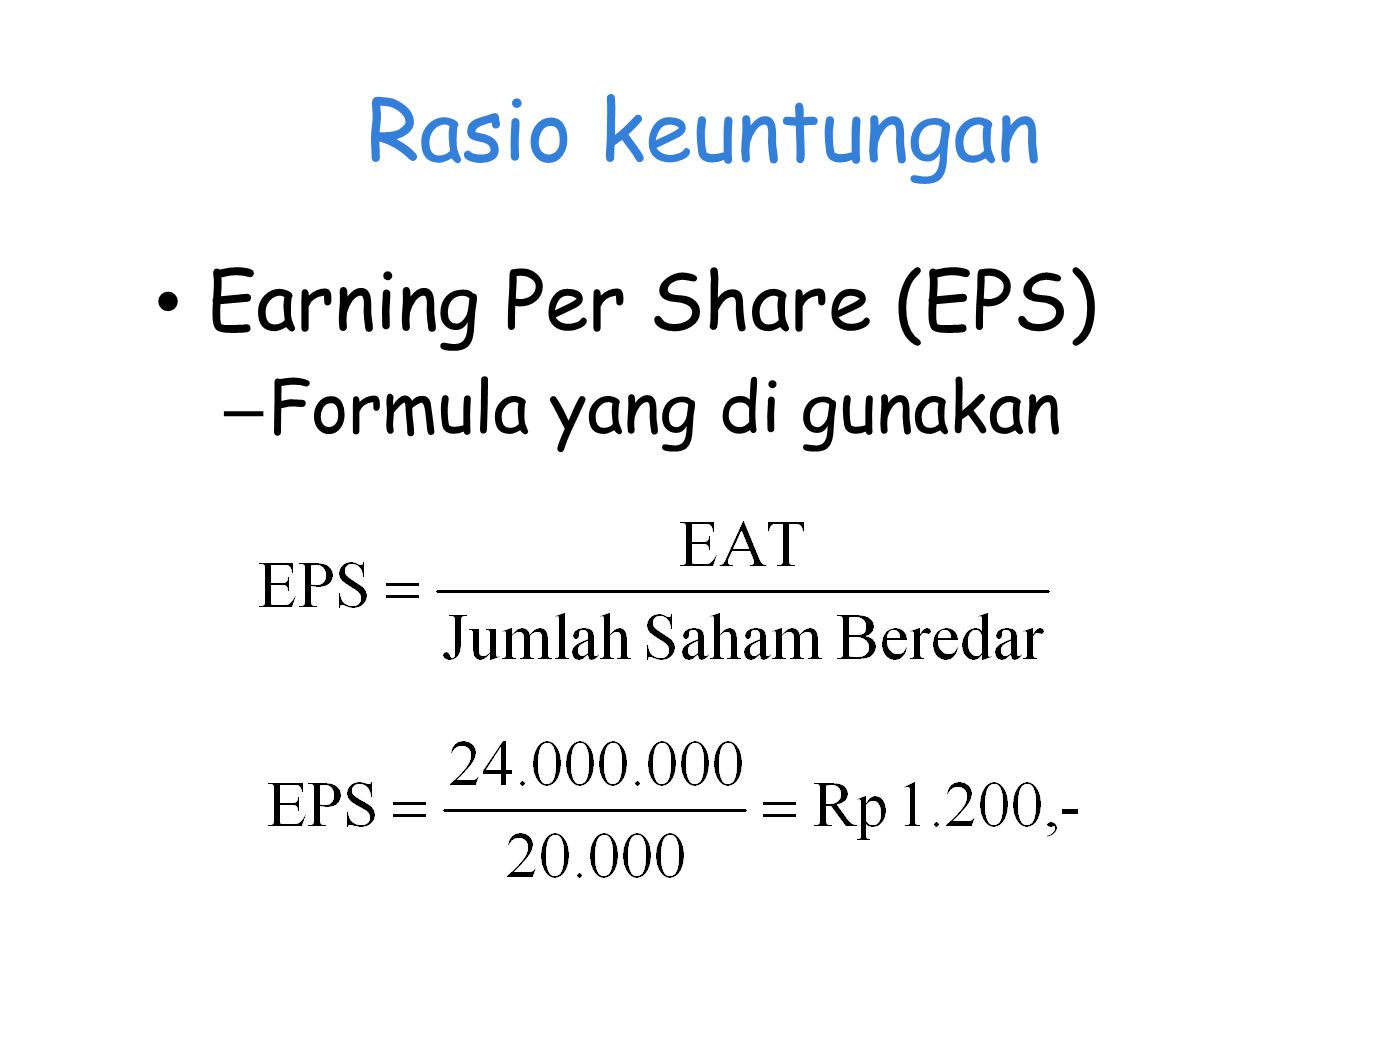 Rasio keuntungan Earning Per Share (EPS) Formula yang di gunakan